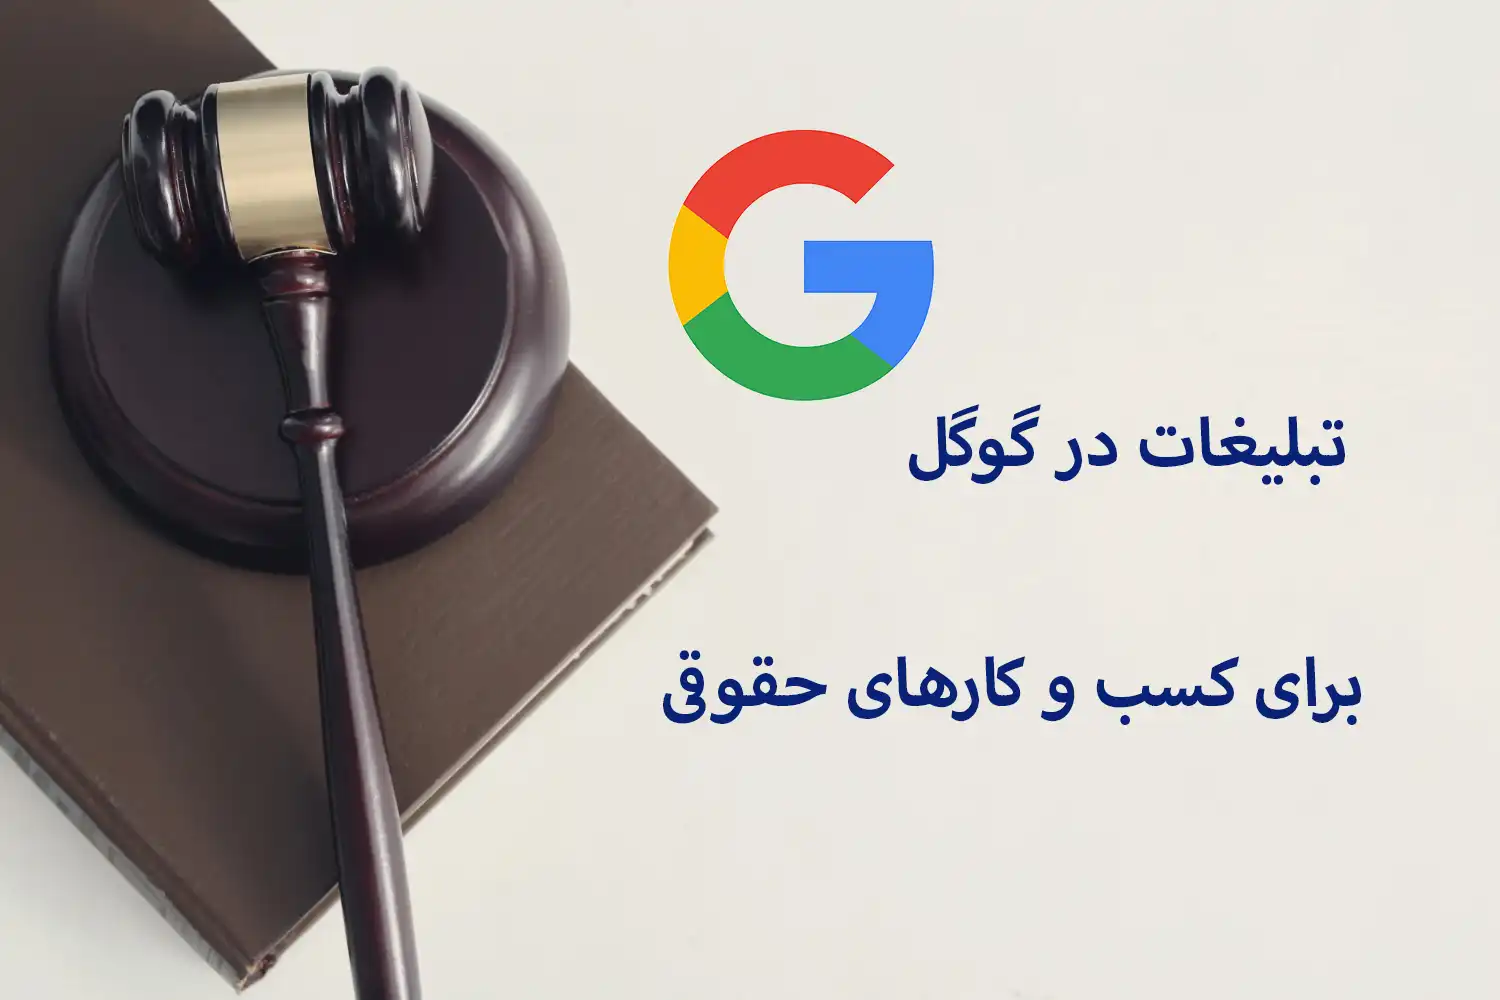 تبلیغات سایت حقوقی در گوگل